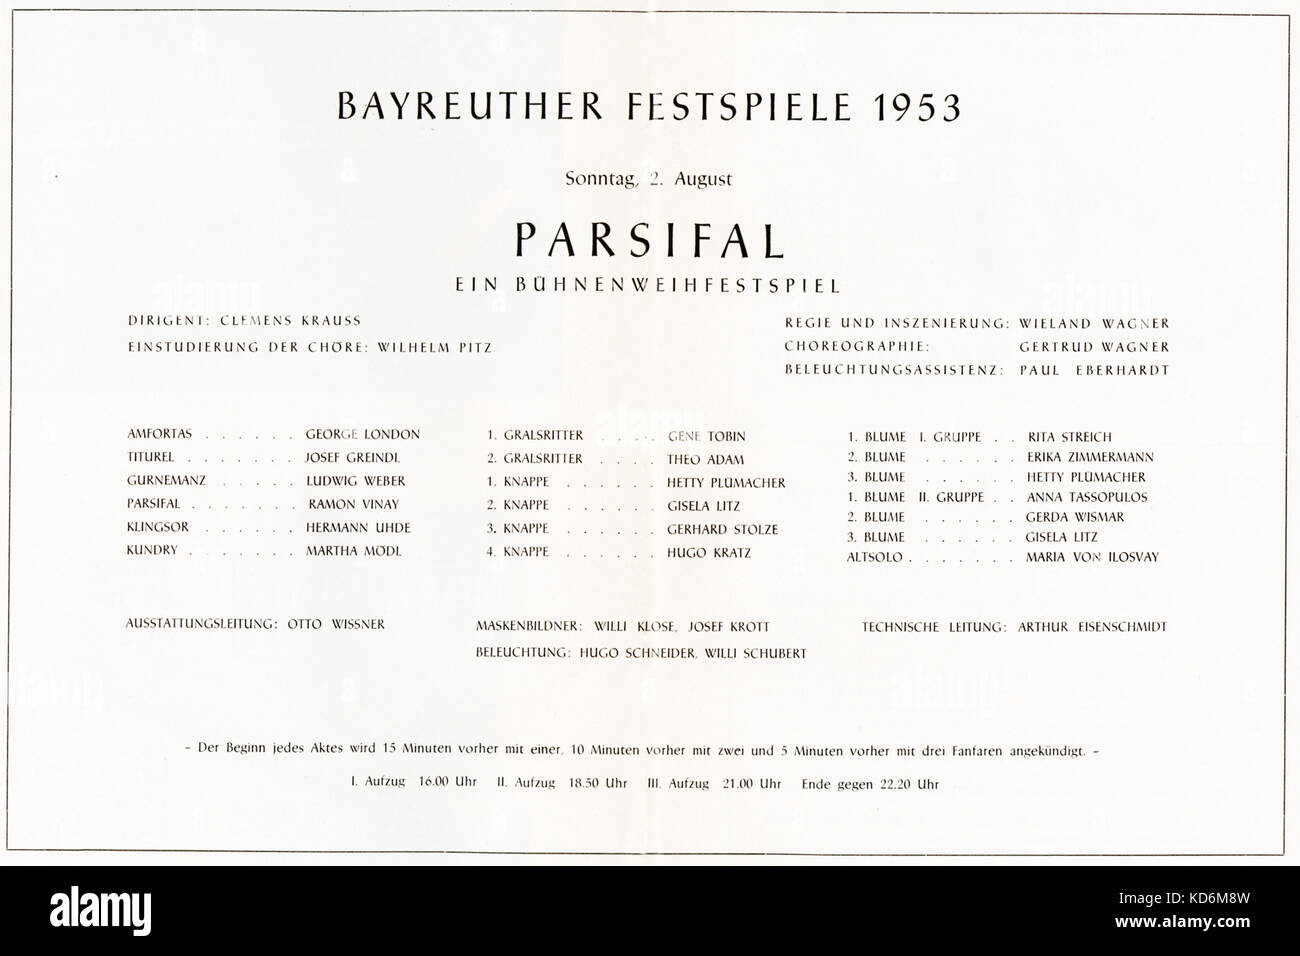 Elenco del cast per la produzione di Wagner Parsifal ' ', Bayeuth Festival House, 1953. Diretto da Wieland Wagner, condotti da Clemens Krauss - con George Londra, Raman Vinay e Martha modl. Foto Stock